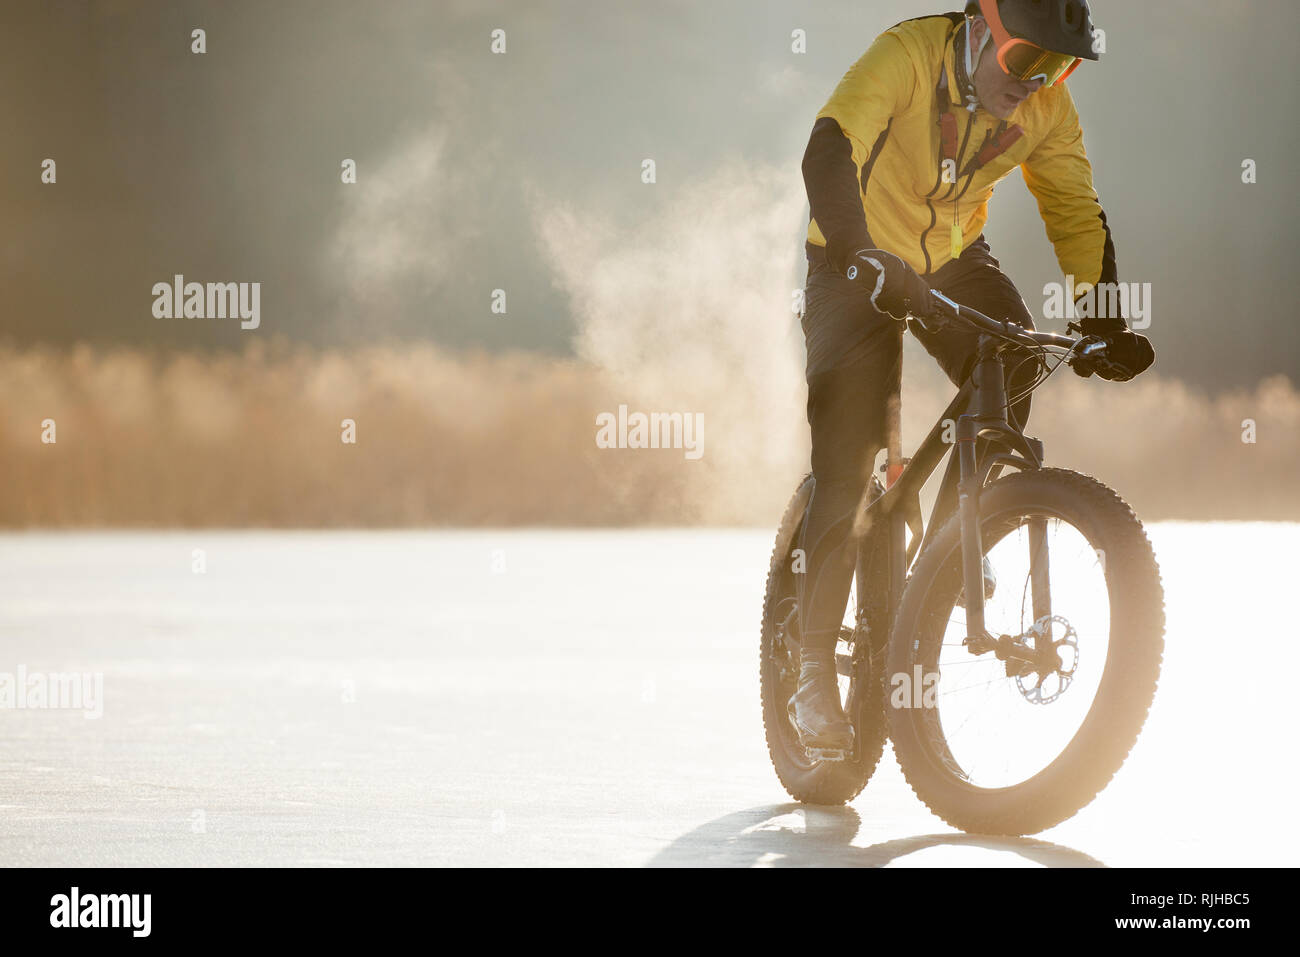 Homme randonnée à vélo sur un lac gelé Banque D'Images